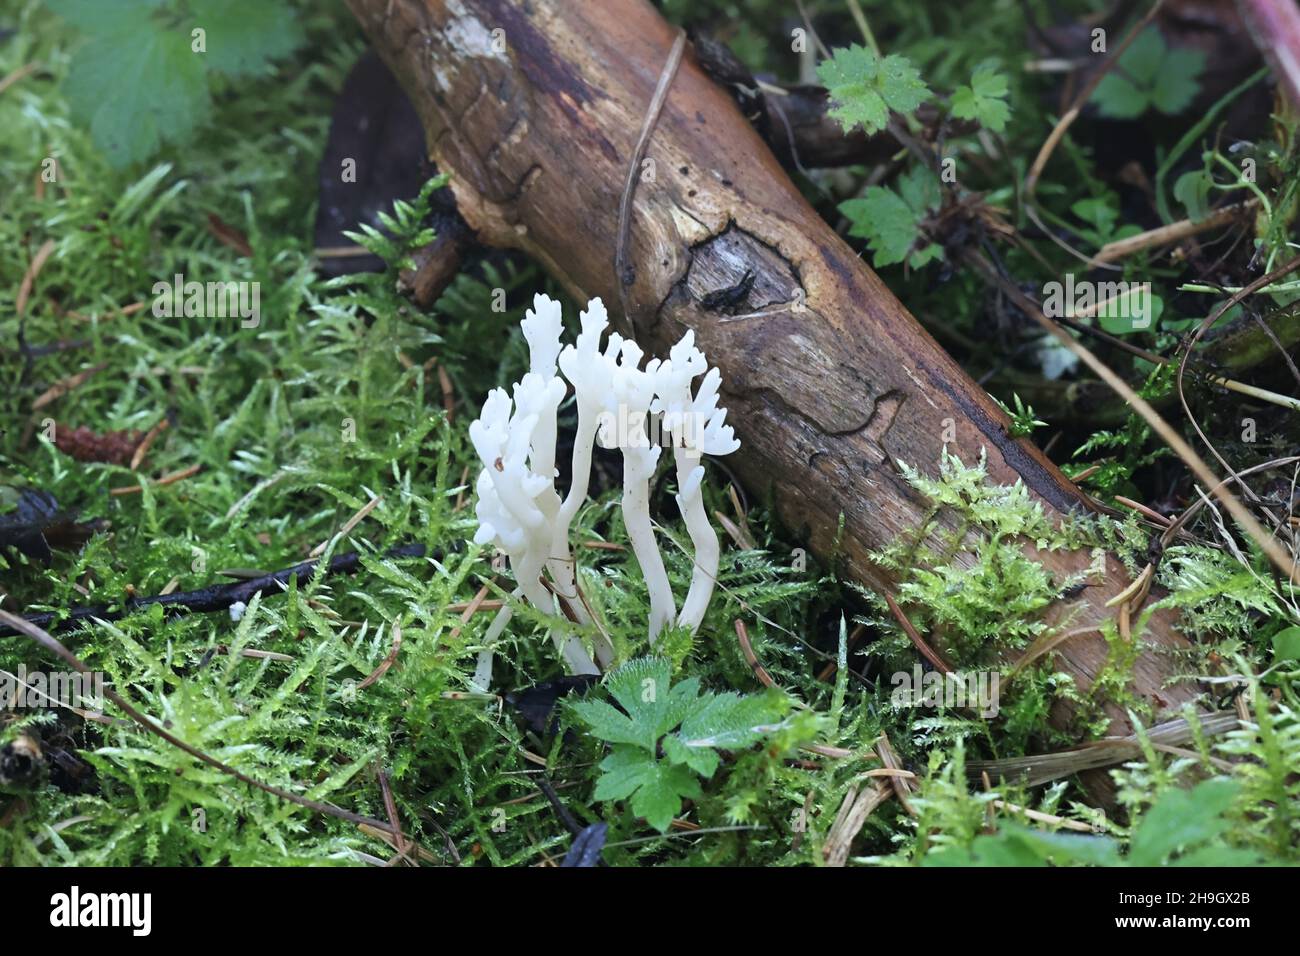 Clavulina coralloides, conosciuto anche come Clavulina cristata, il fungo corallino bianco o il fungo corallino crestato, fungo selvatico dalla Finlandia Foto Stock